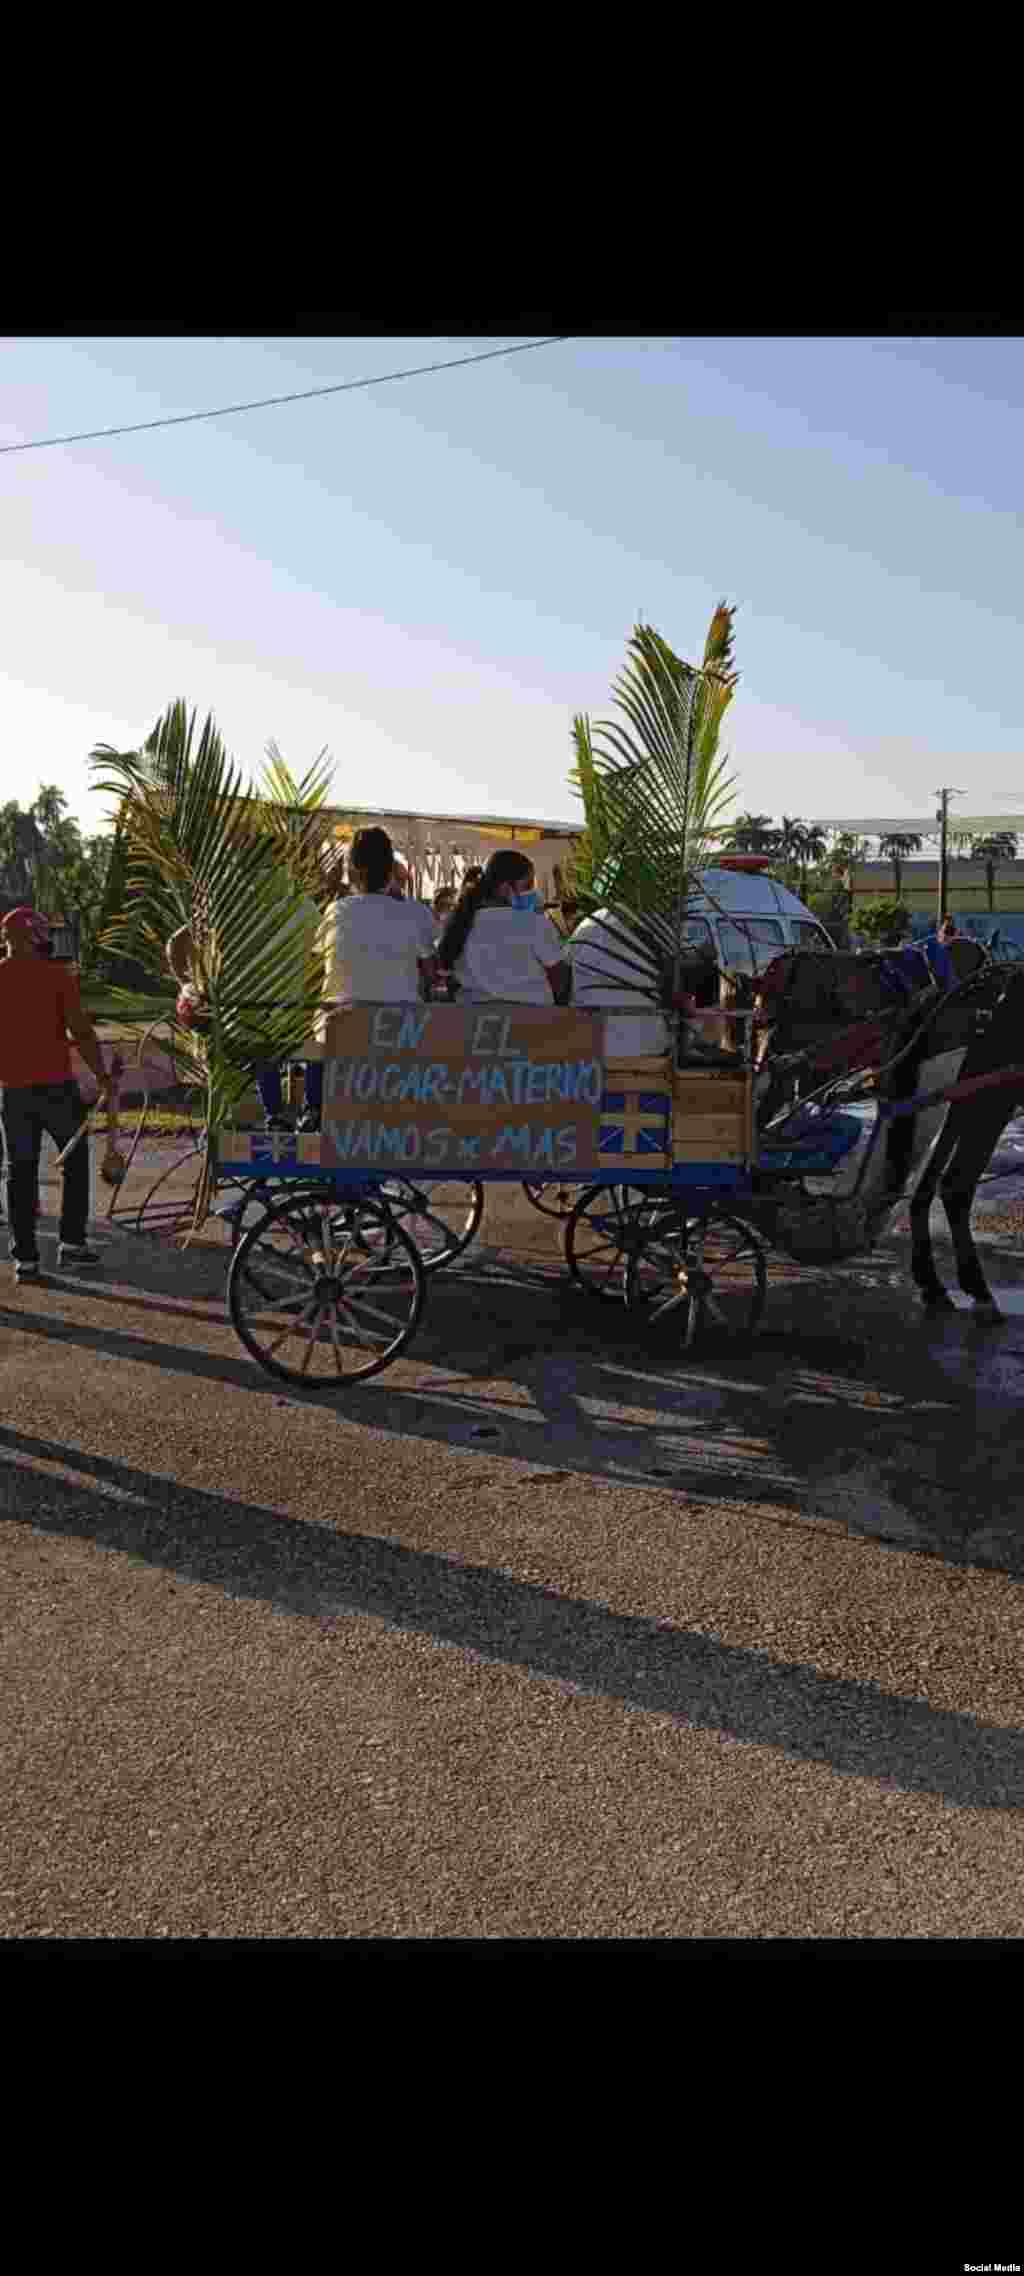 En una carroza tirada por caballos, este hogar Materno de Ciego de &#193;vila estuvo presente en el desfile. (Foto: Facebook/Yamisleidis Morera)